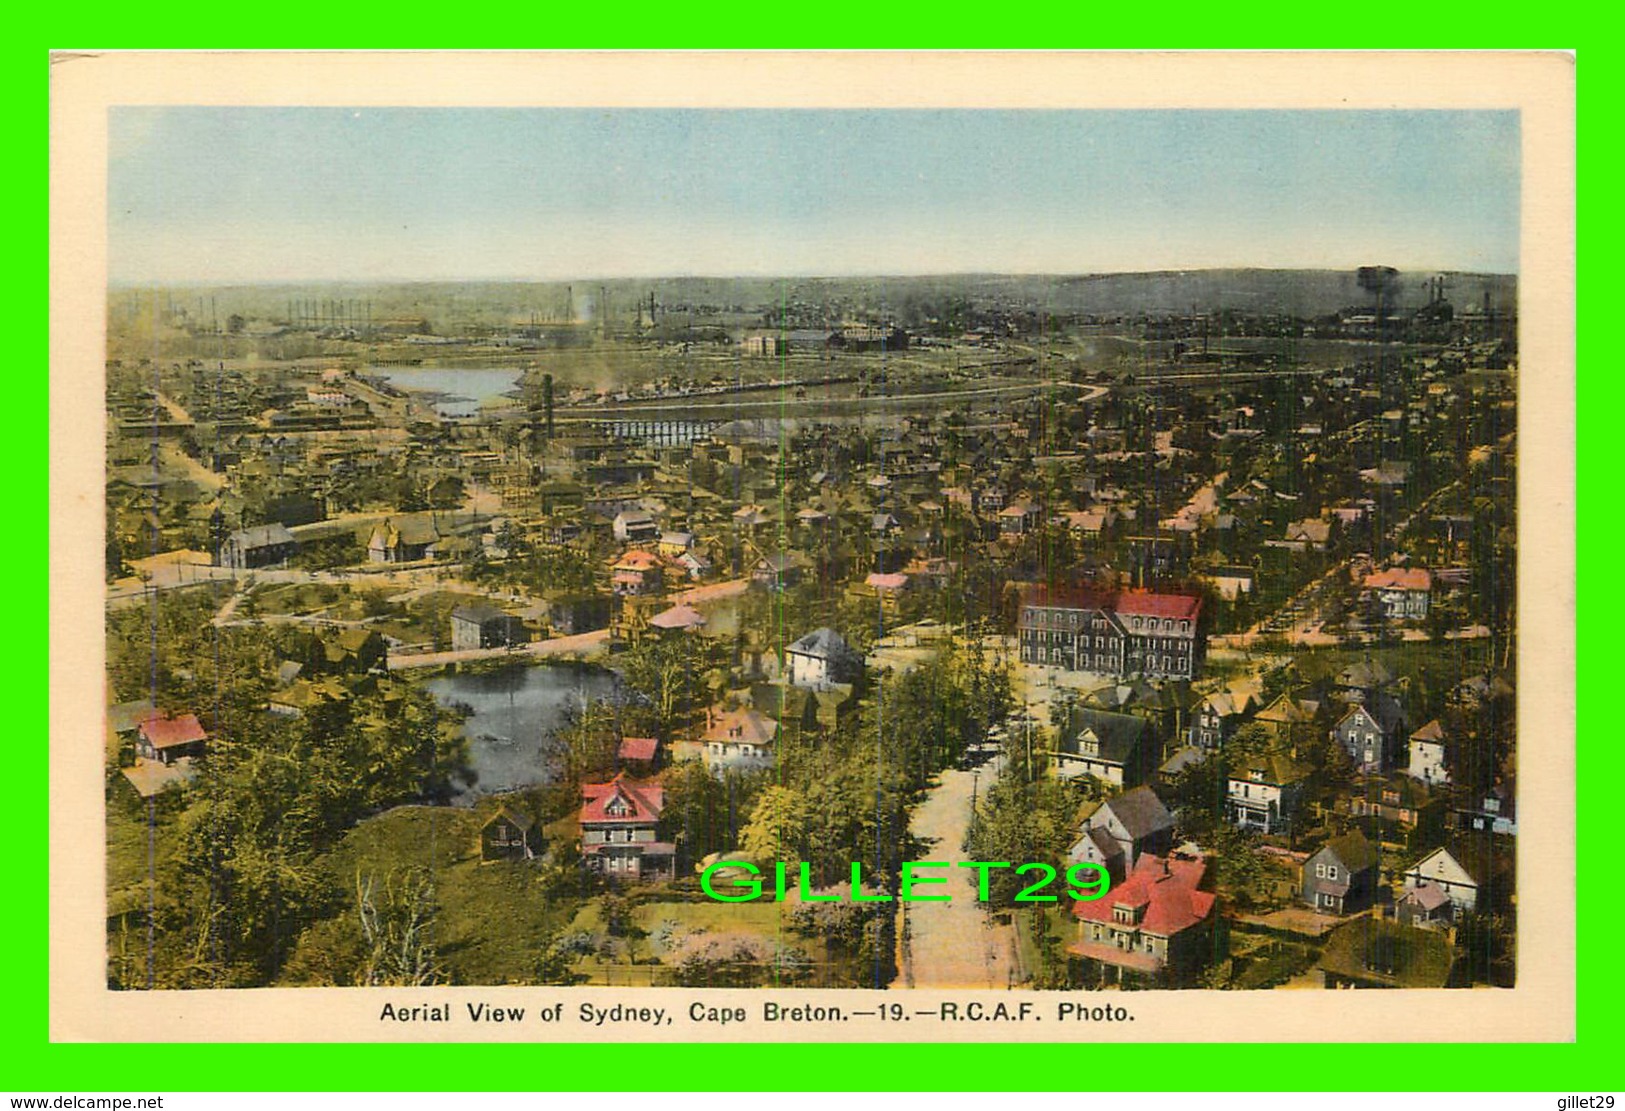 SYDNEY, NOVA SCOTIA - AERIAL VIEW OF SYDNEY - R.C.A.F. PHOTO - PECO - - Cape Breton